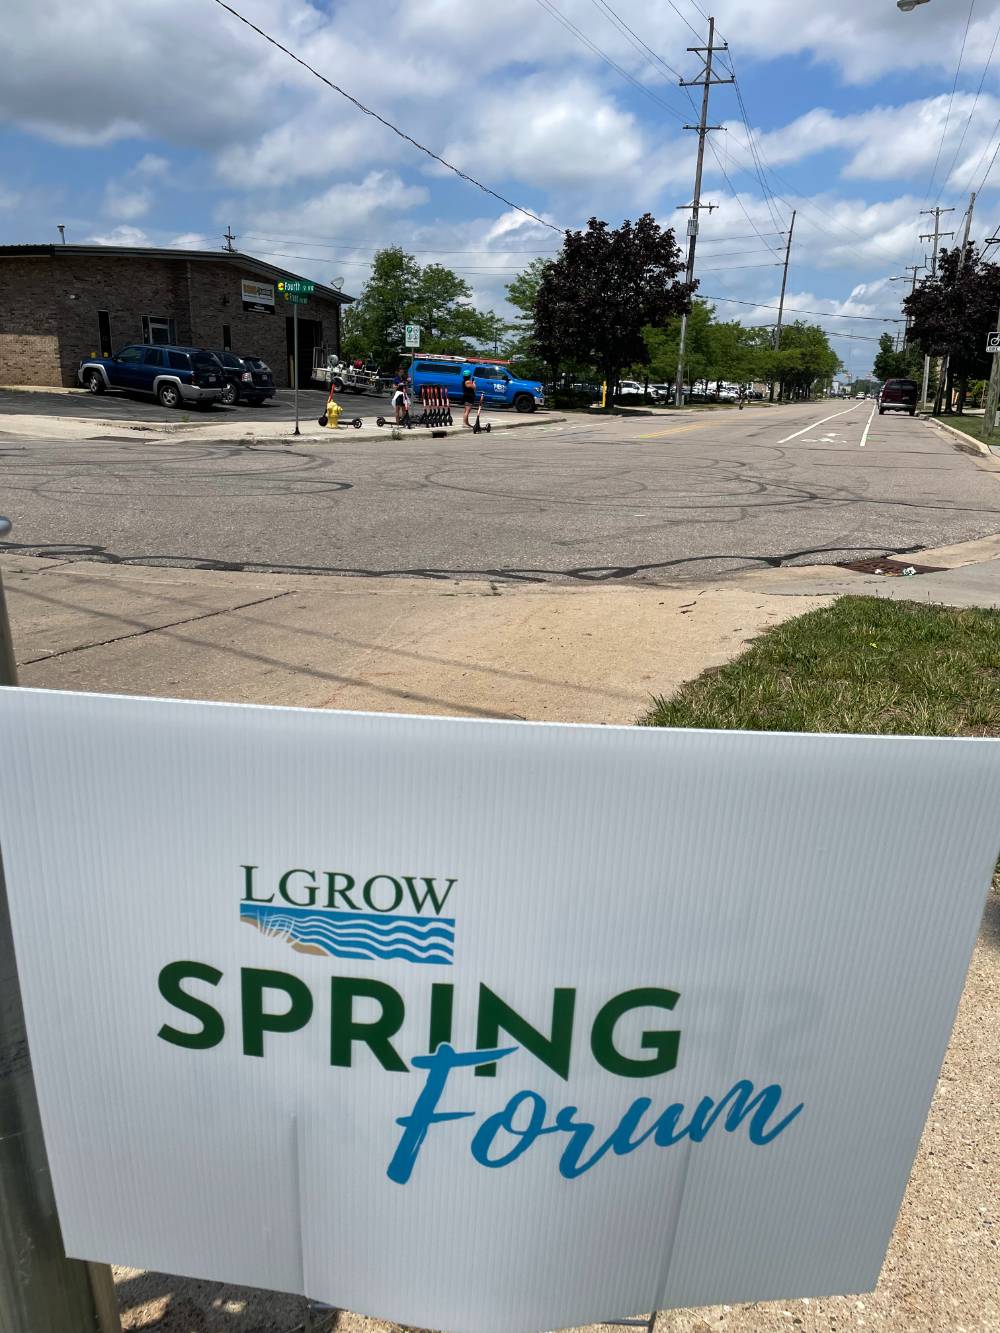 LGROW spring forum sign